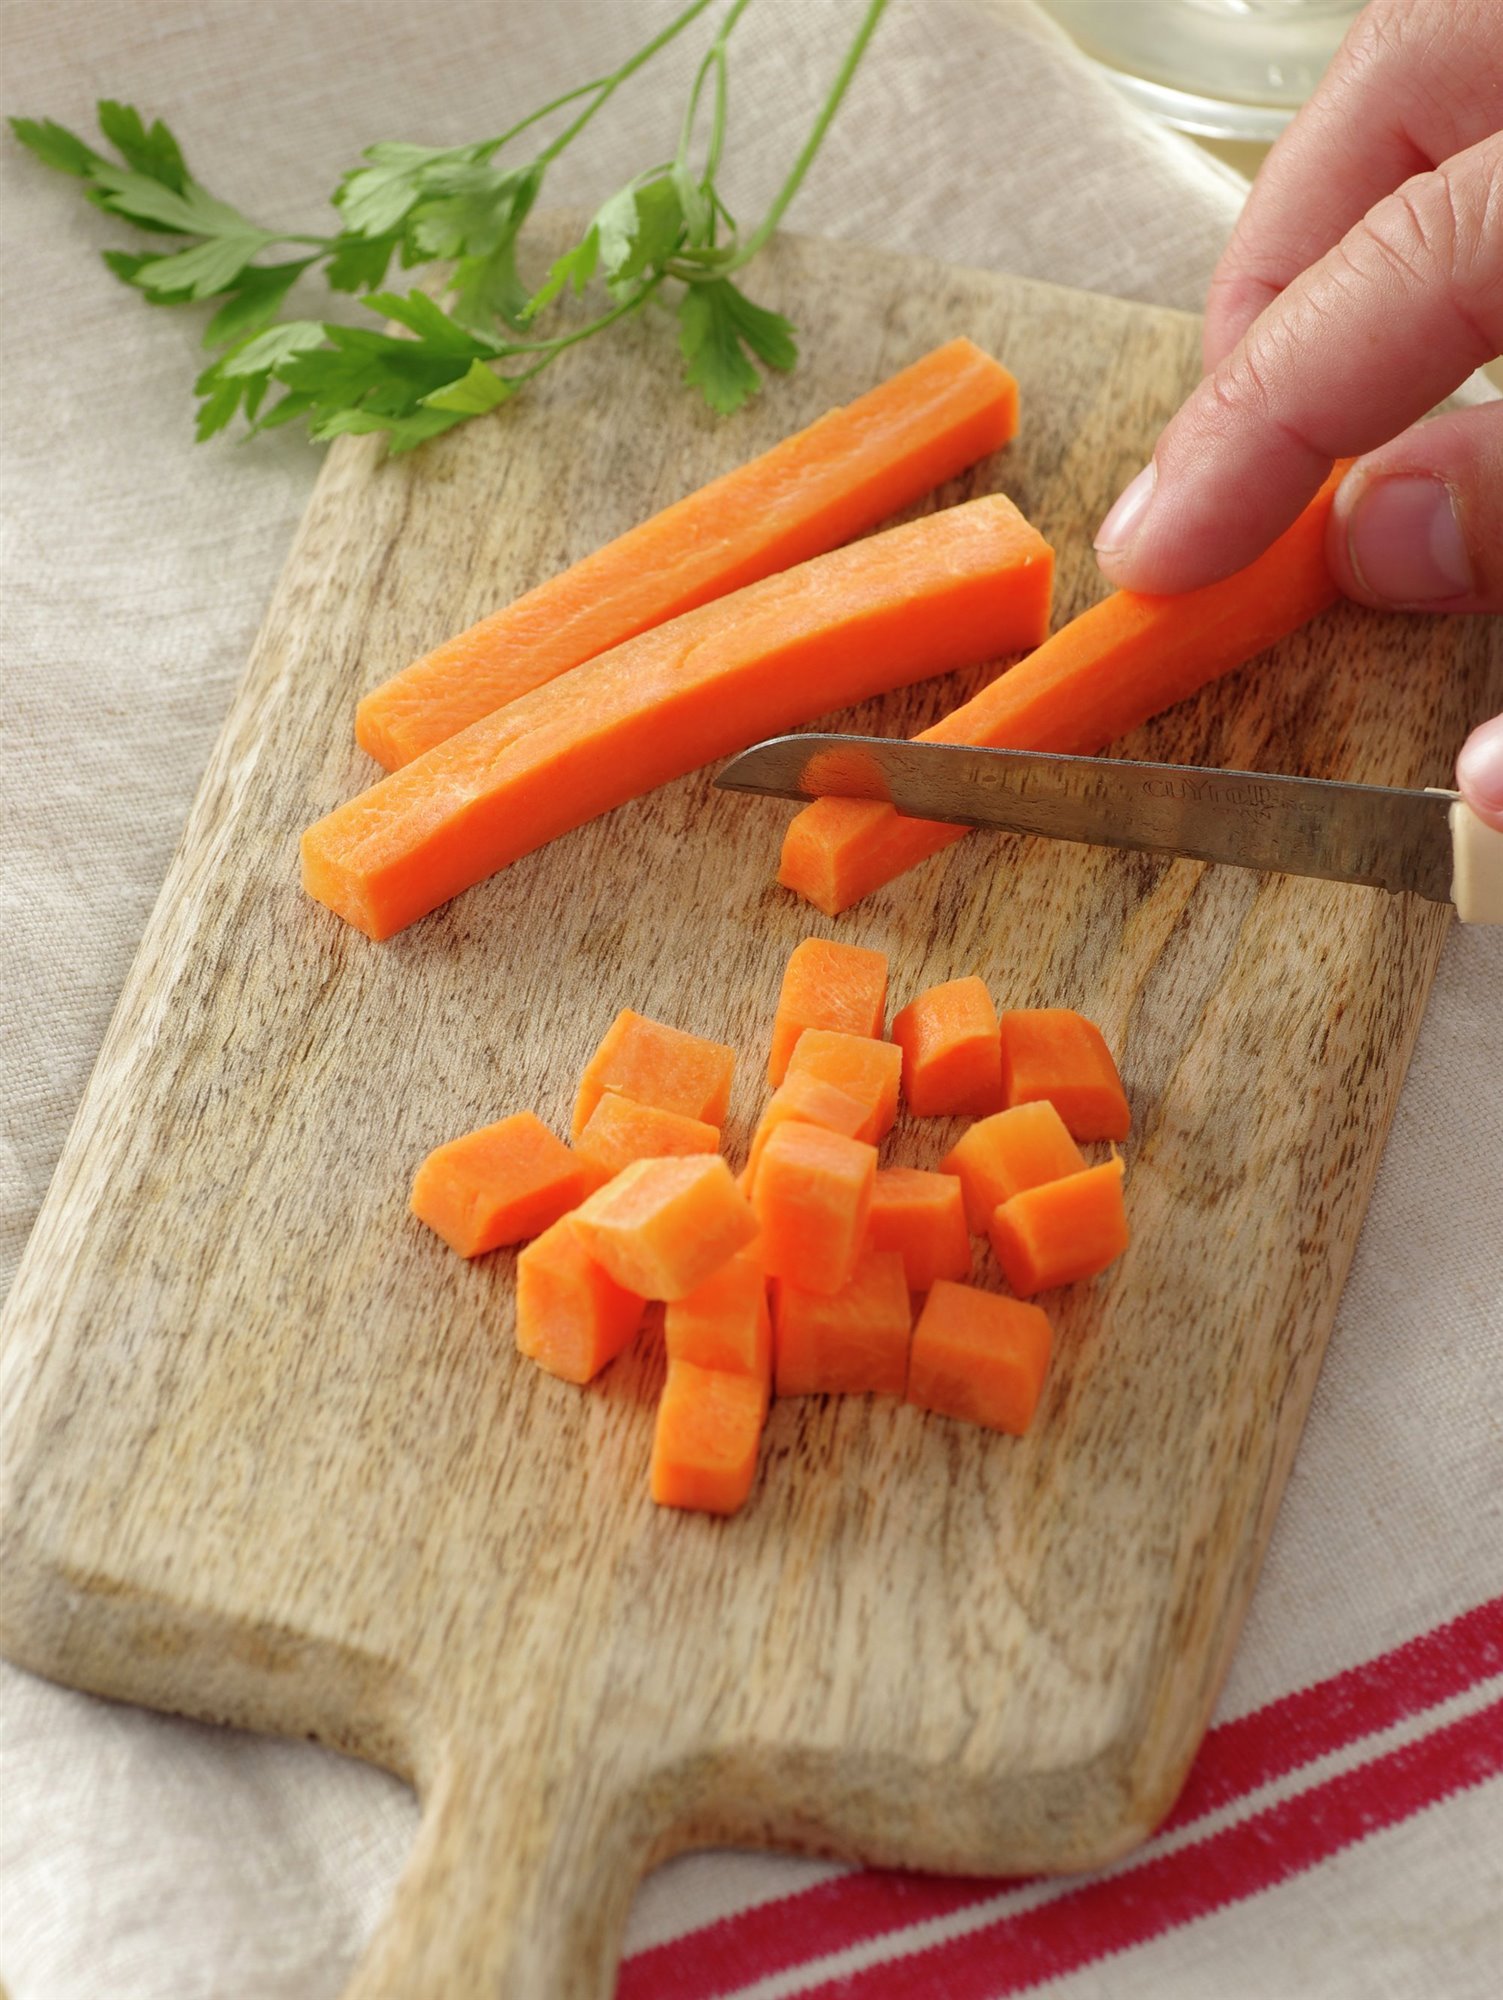 2. Corta las zanahorias a daditos